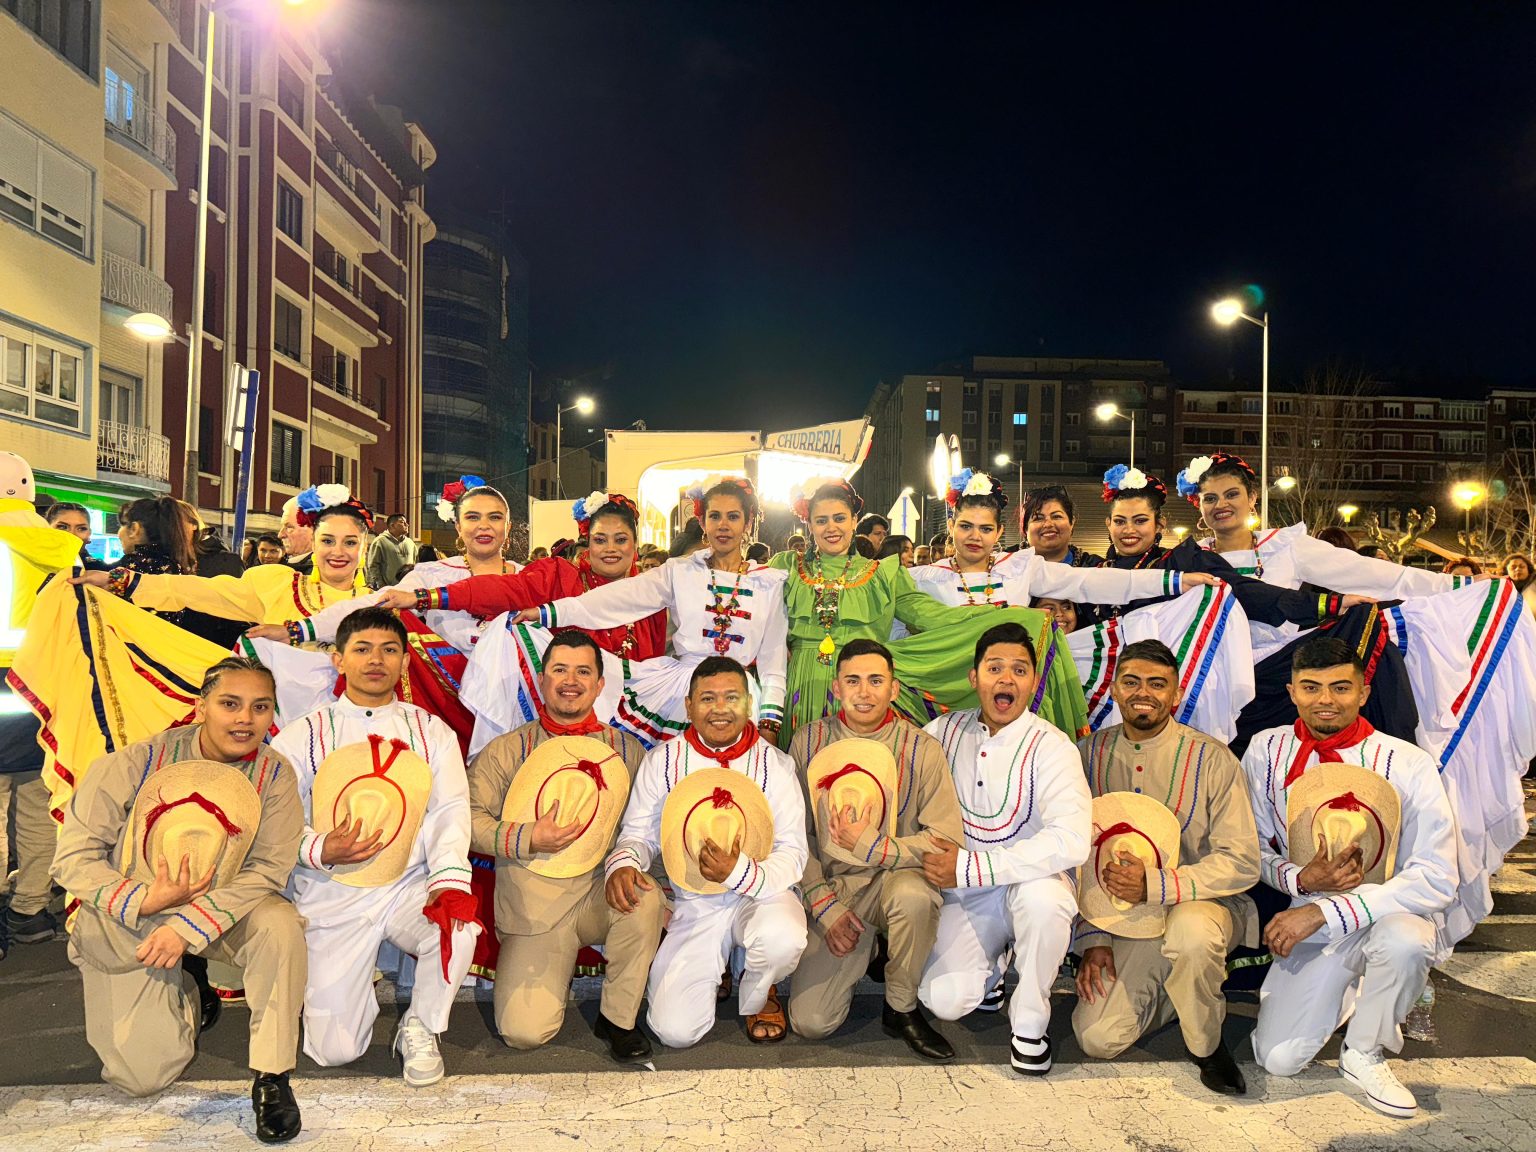 Grupo de Danza Folclórica catracho ganan segundo lugar en Carnaval de Bilbao